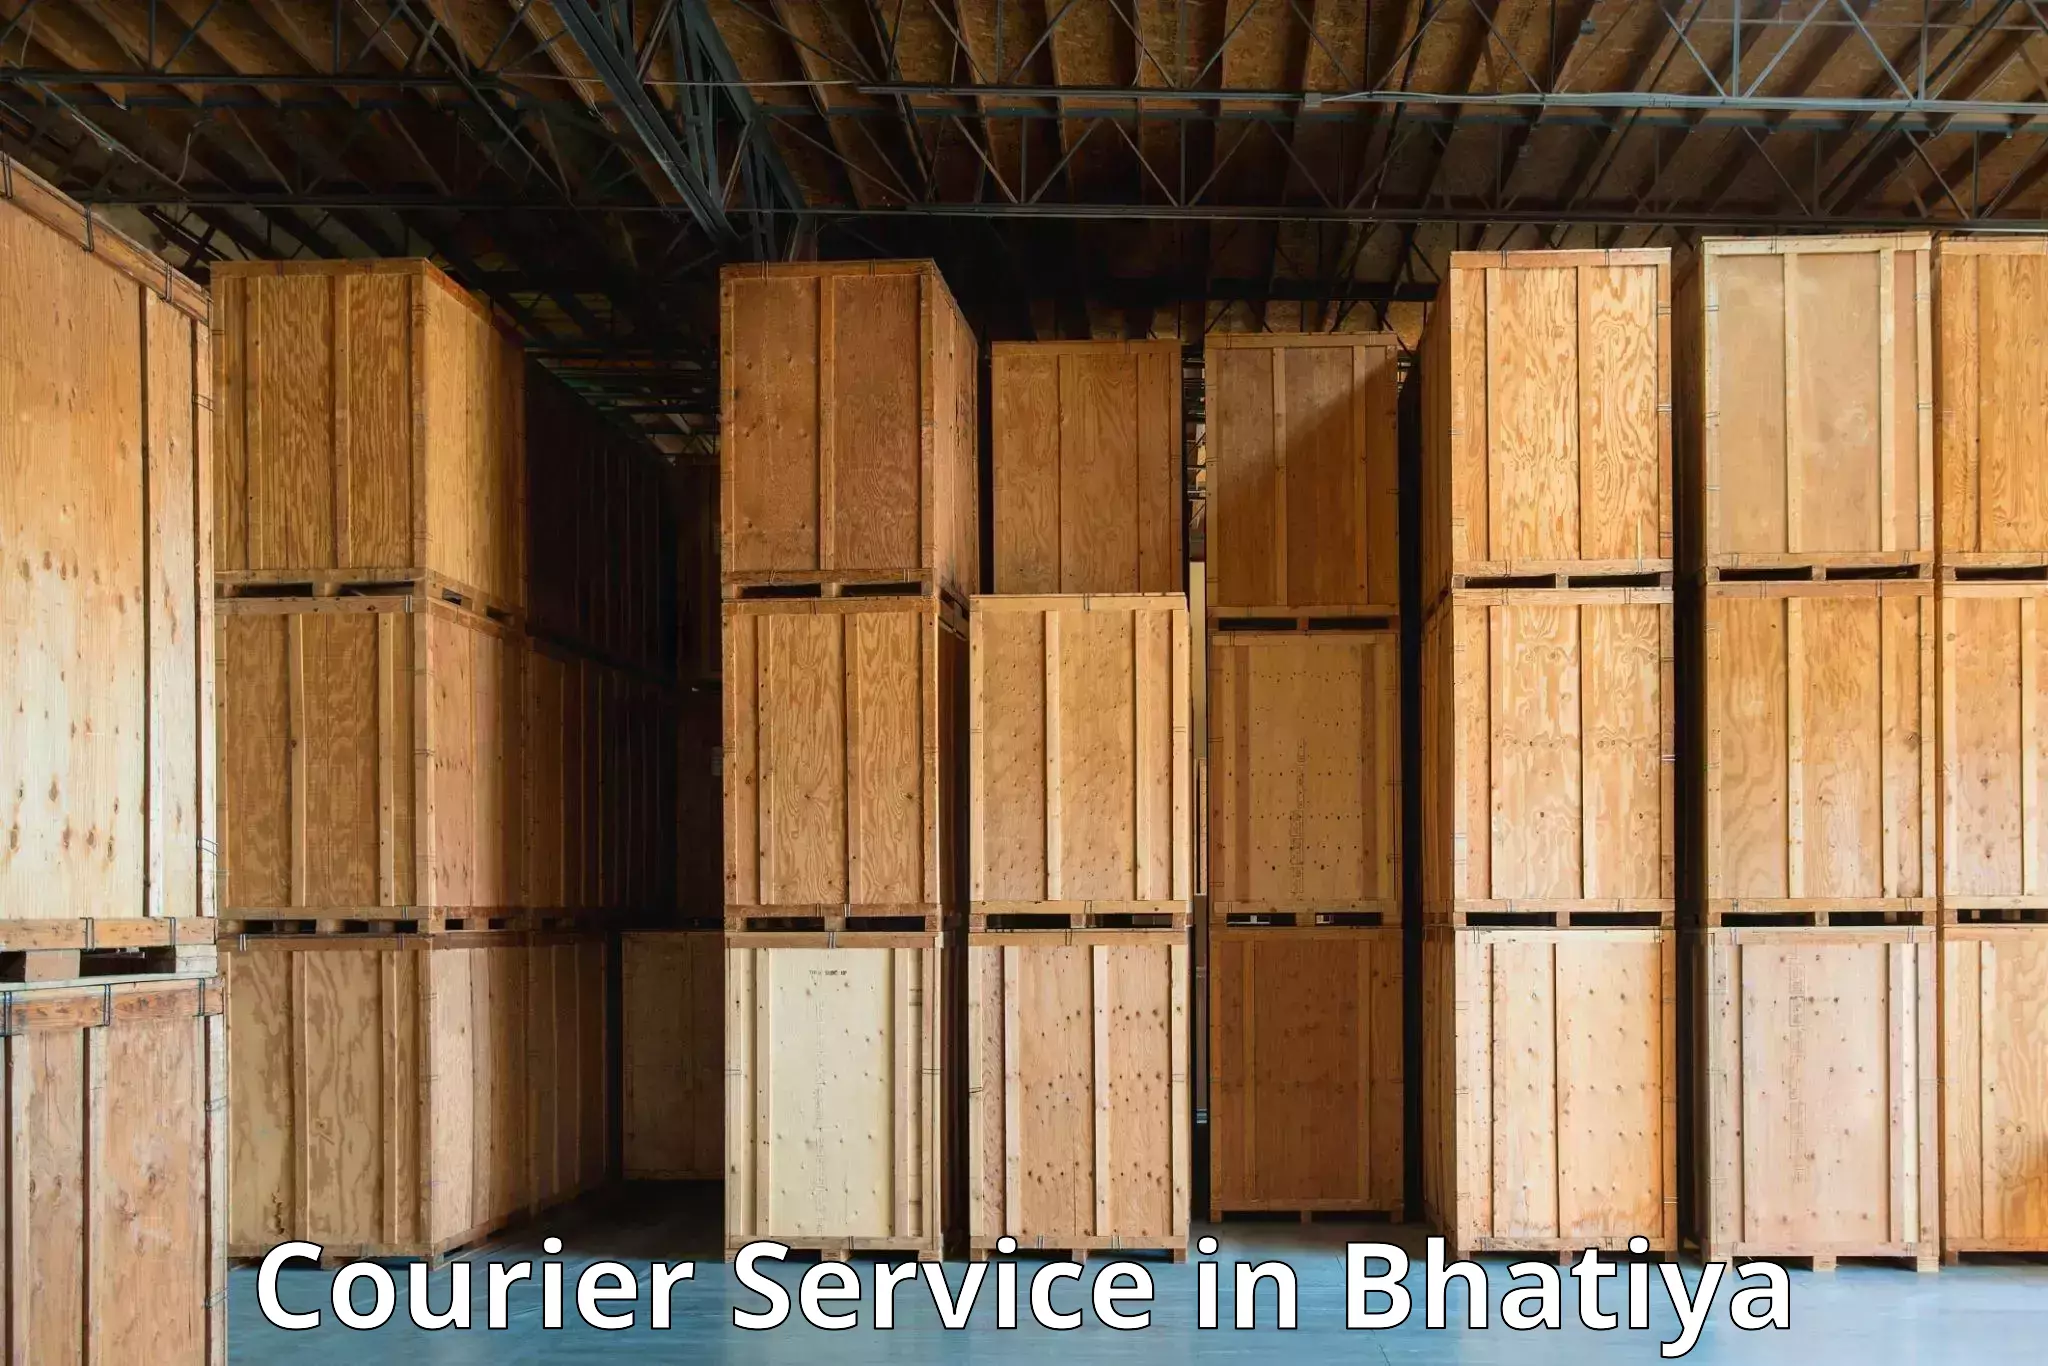 Cargo courier service in Bhatiya